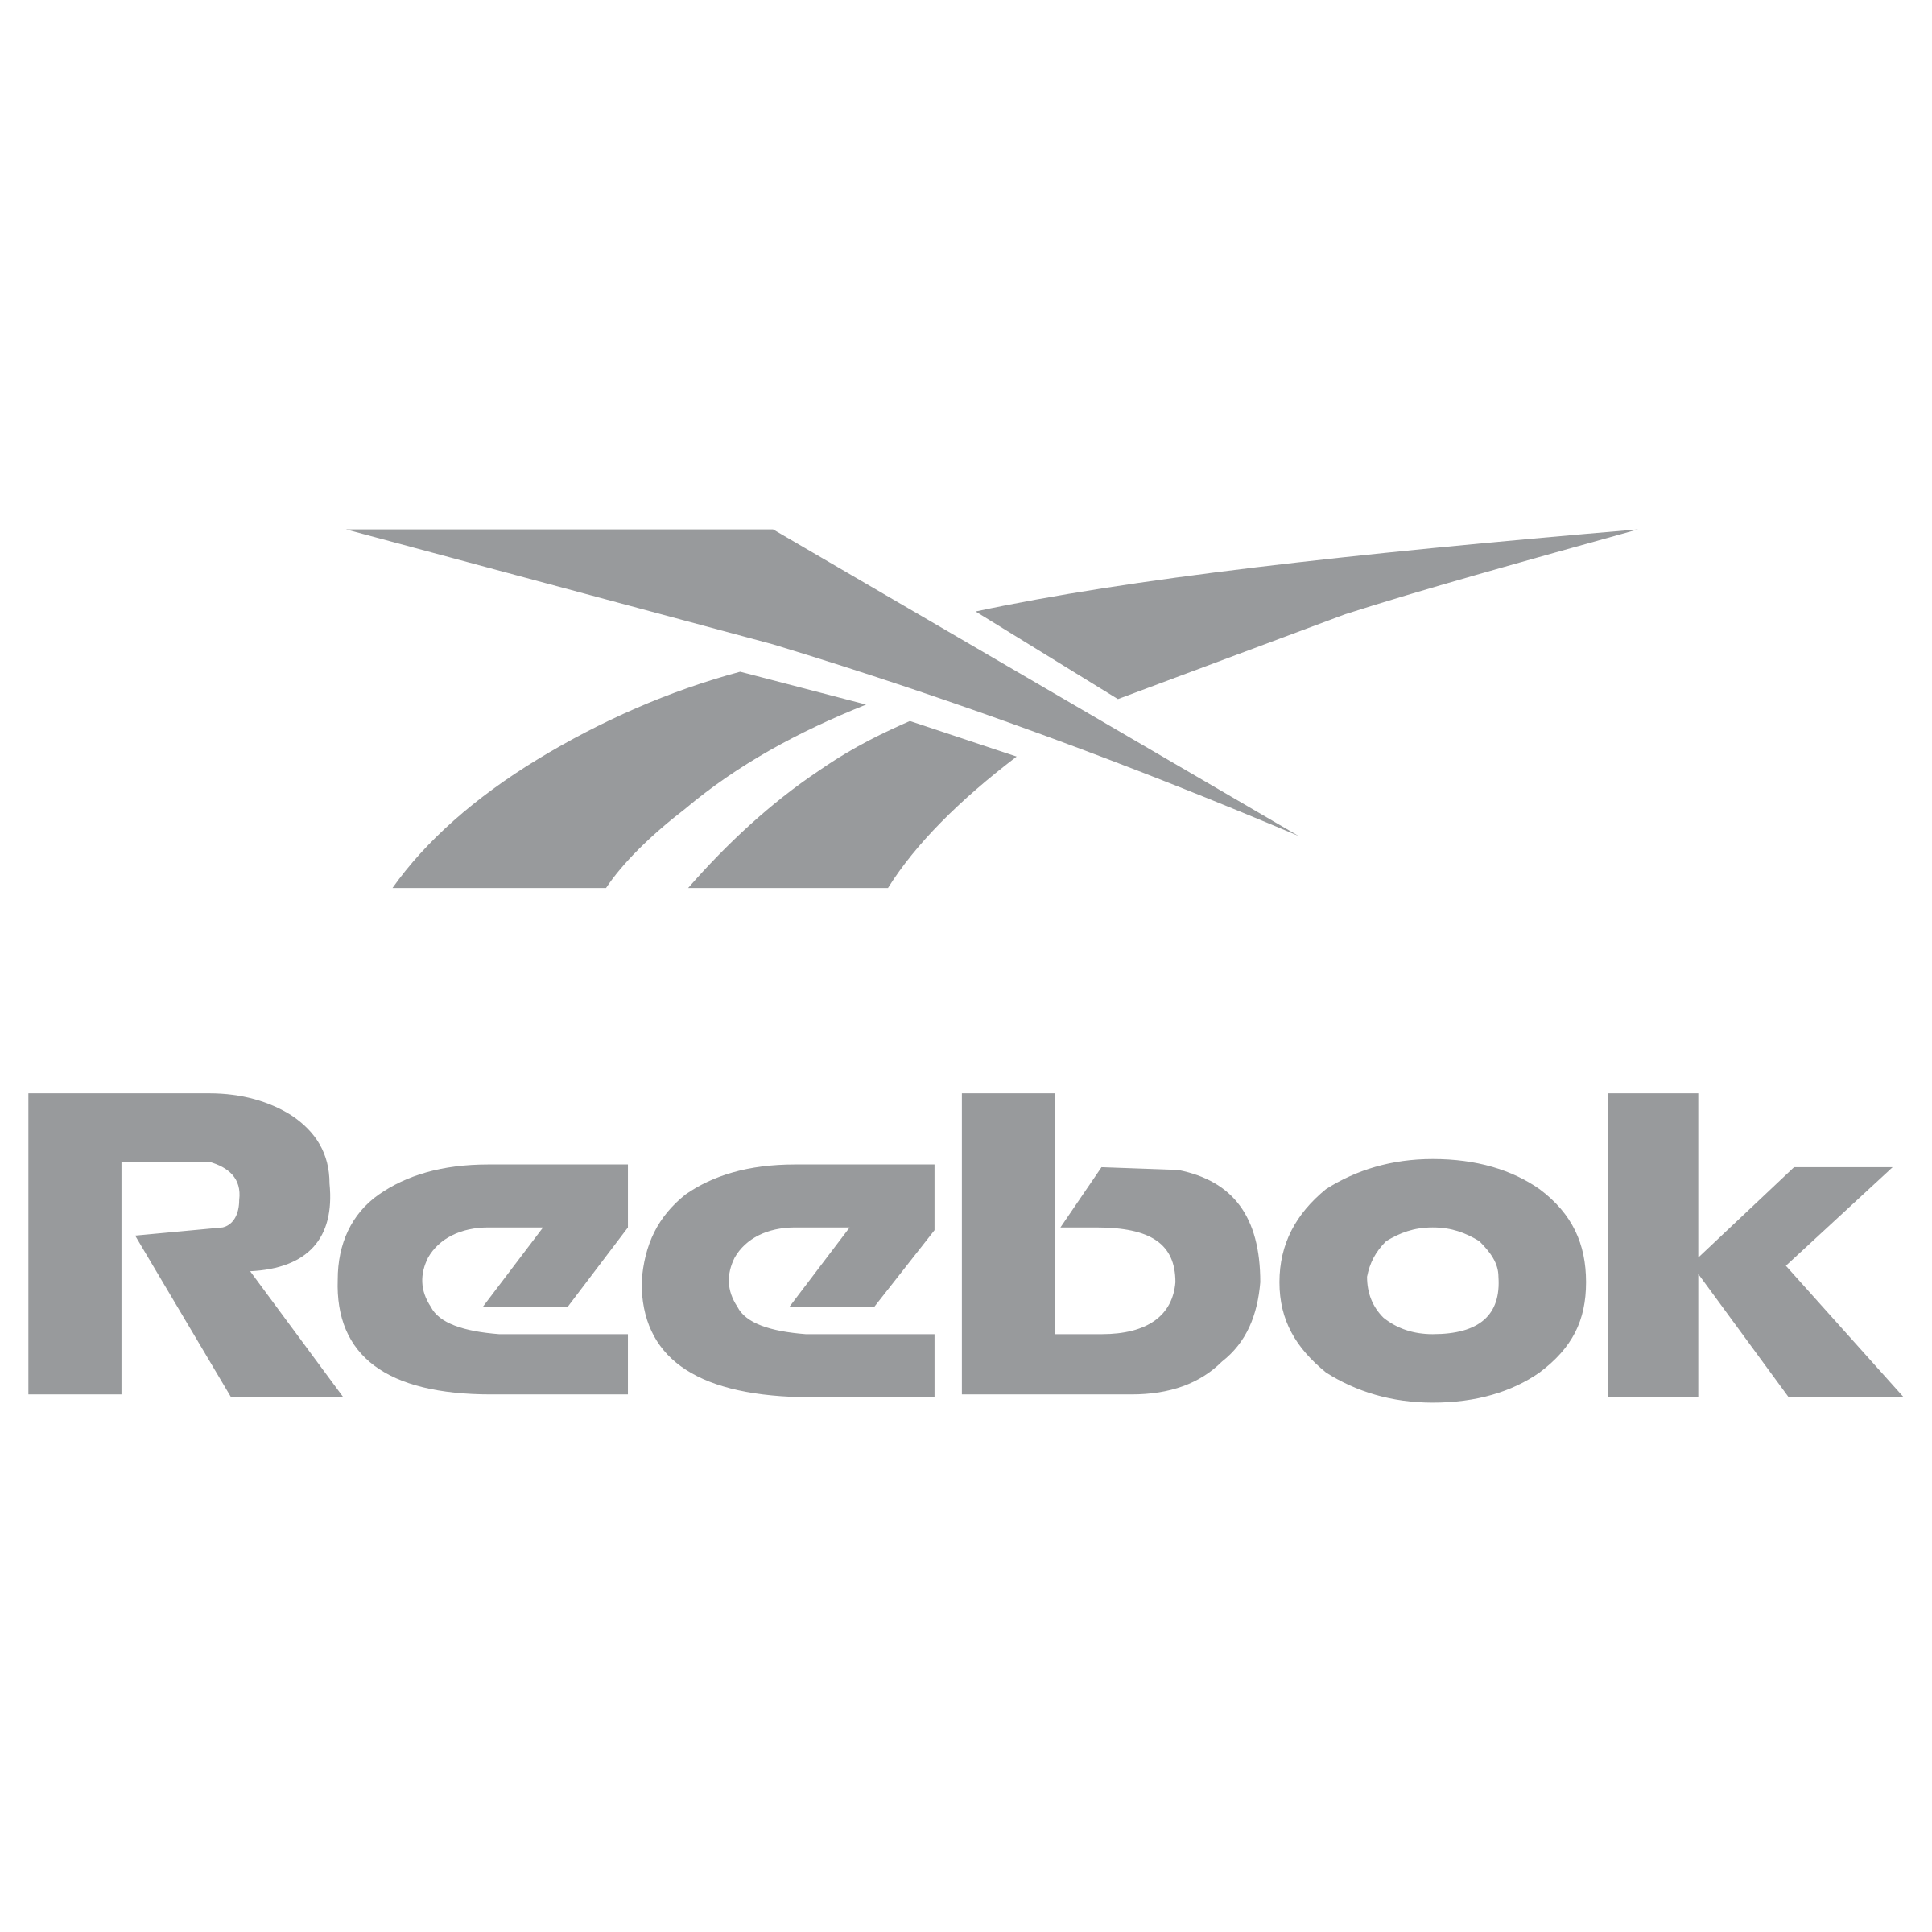 Reebok Logo Png Free Download